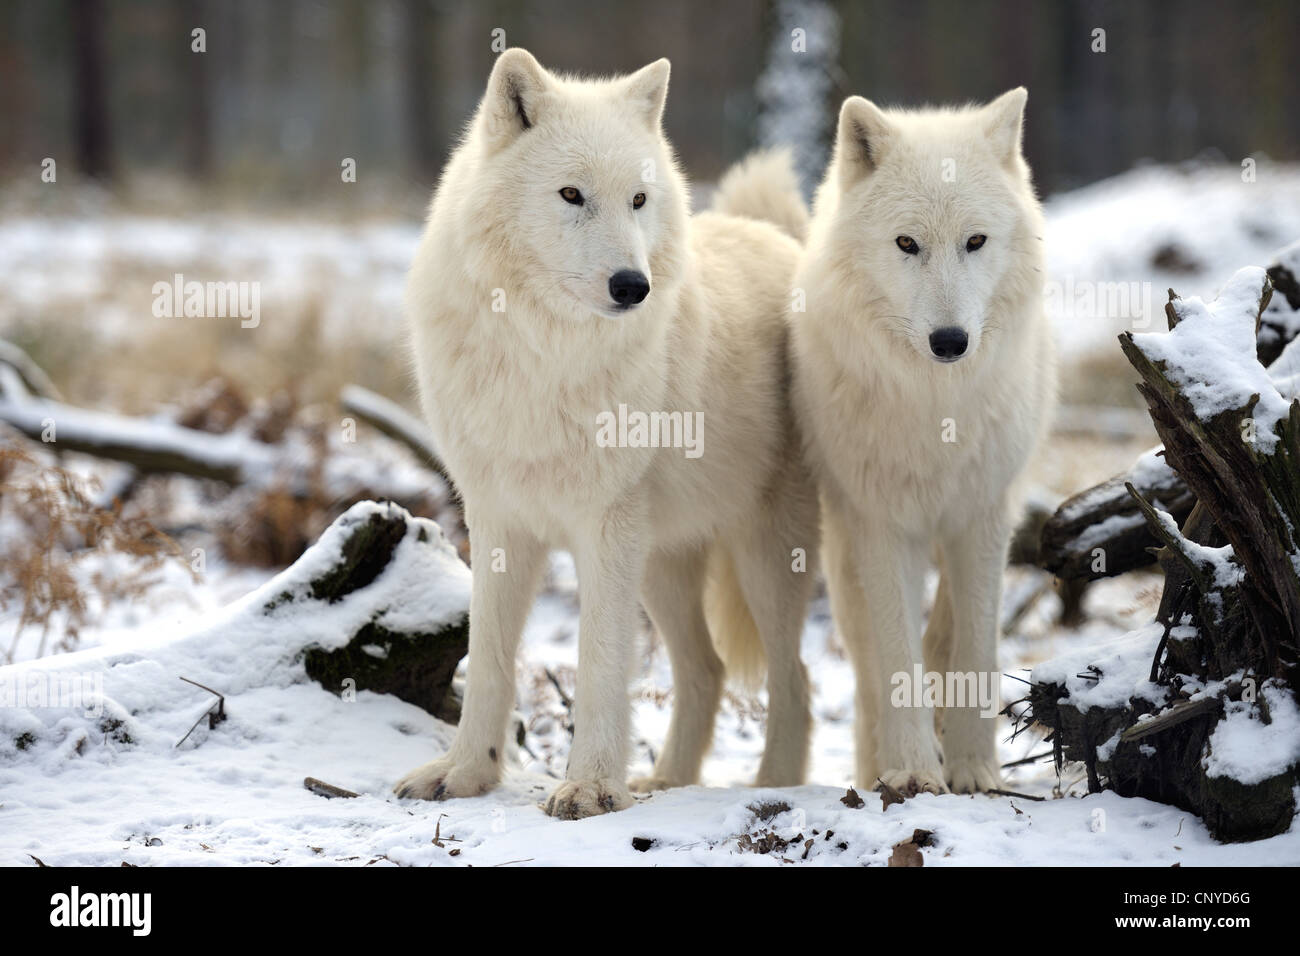 Loup arctique, toundra wolf (Canis lupus albus, Canis lupus arctos), deux loups standings côte à côte dans la neige Banque D'Images